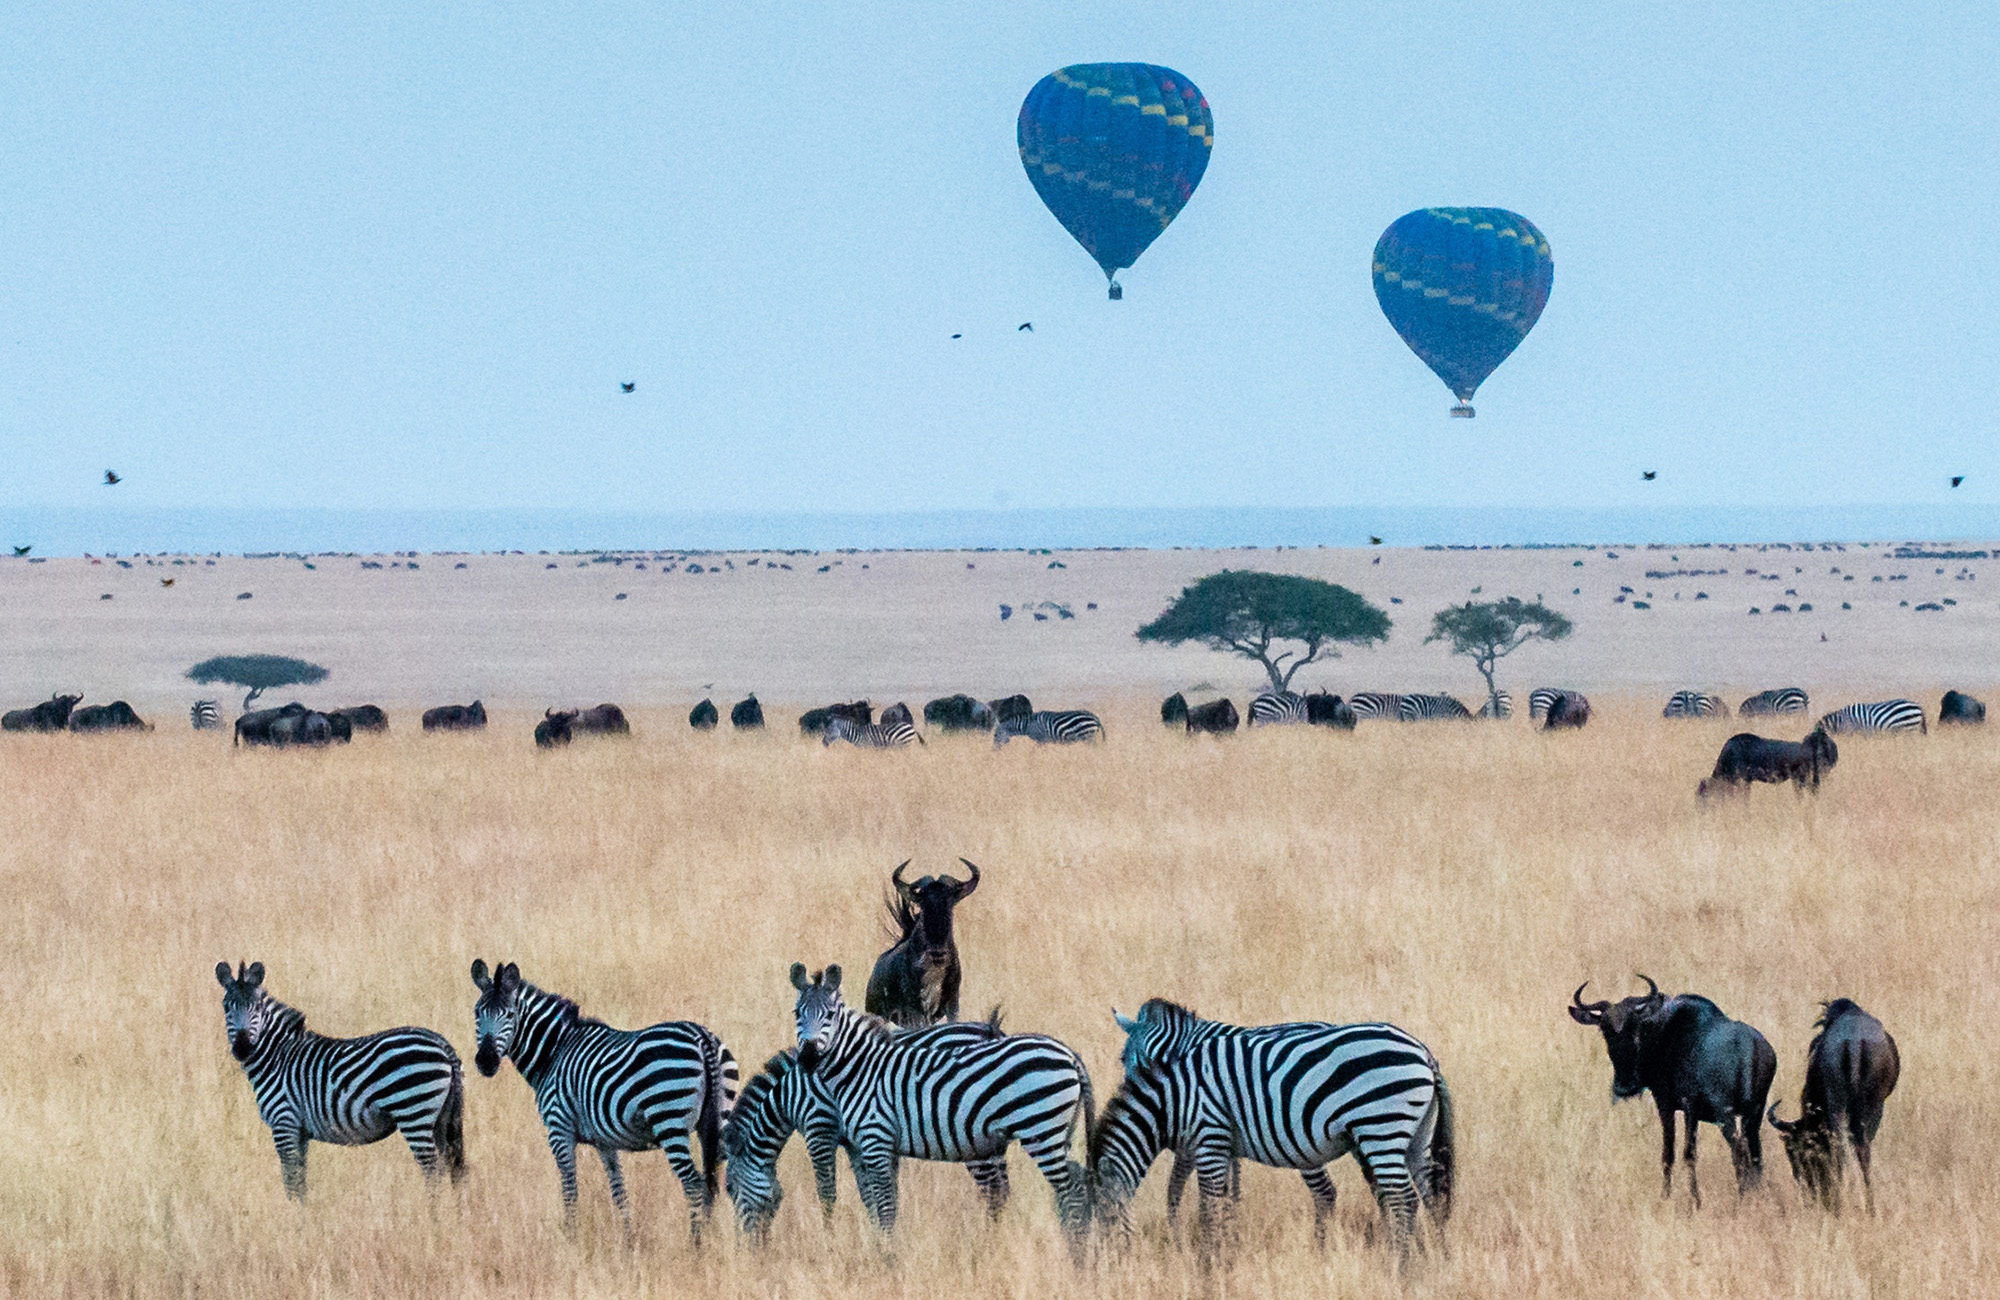 Flyg luftballong över savannen i Serengeti..